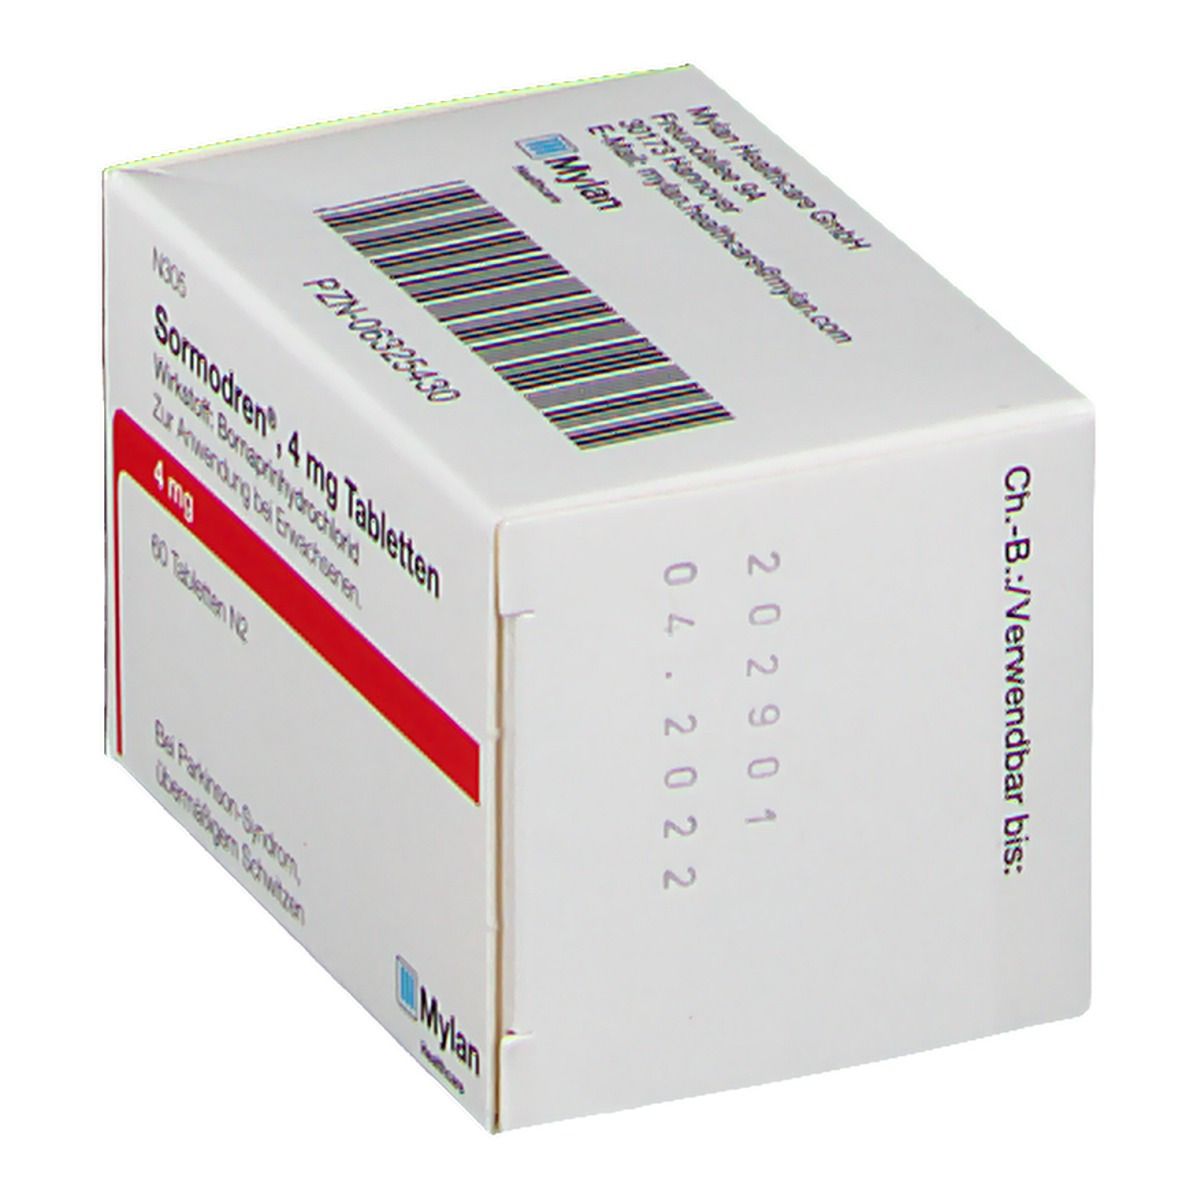 Sormodren® 4 mg